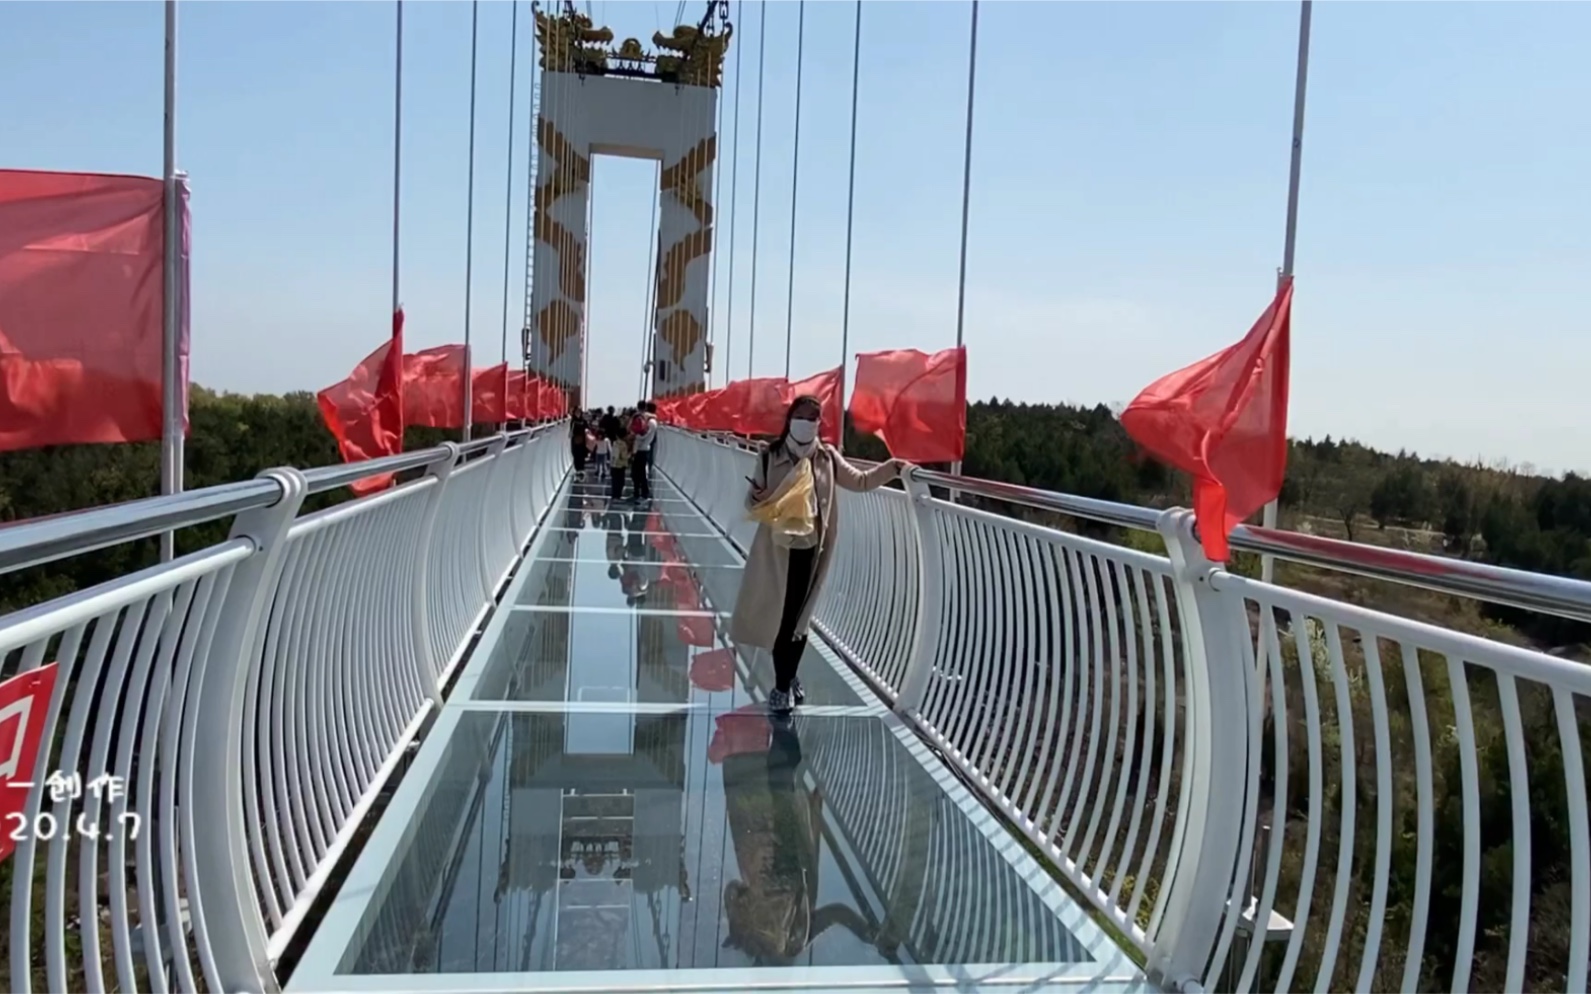 徐州马陵山玻璃桥已开放 看看风景如何